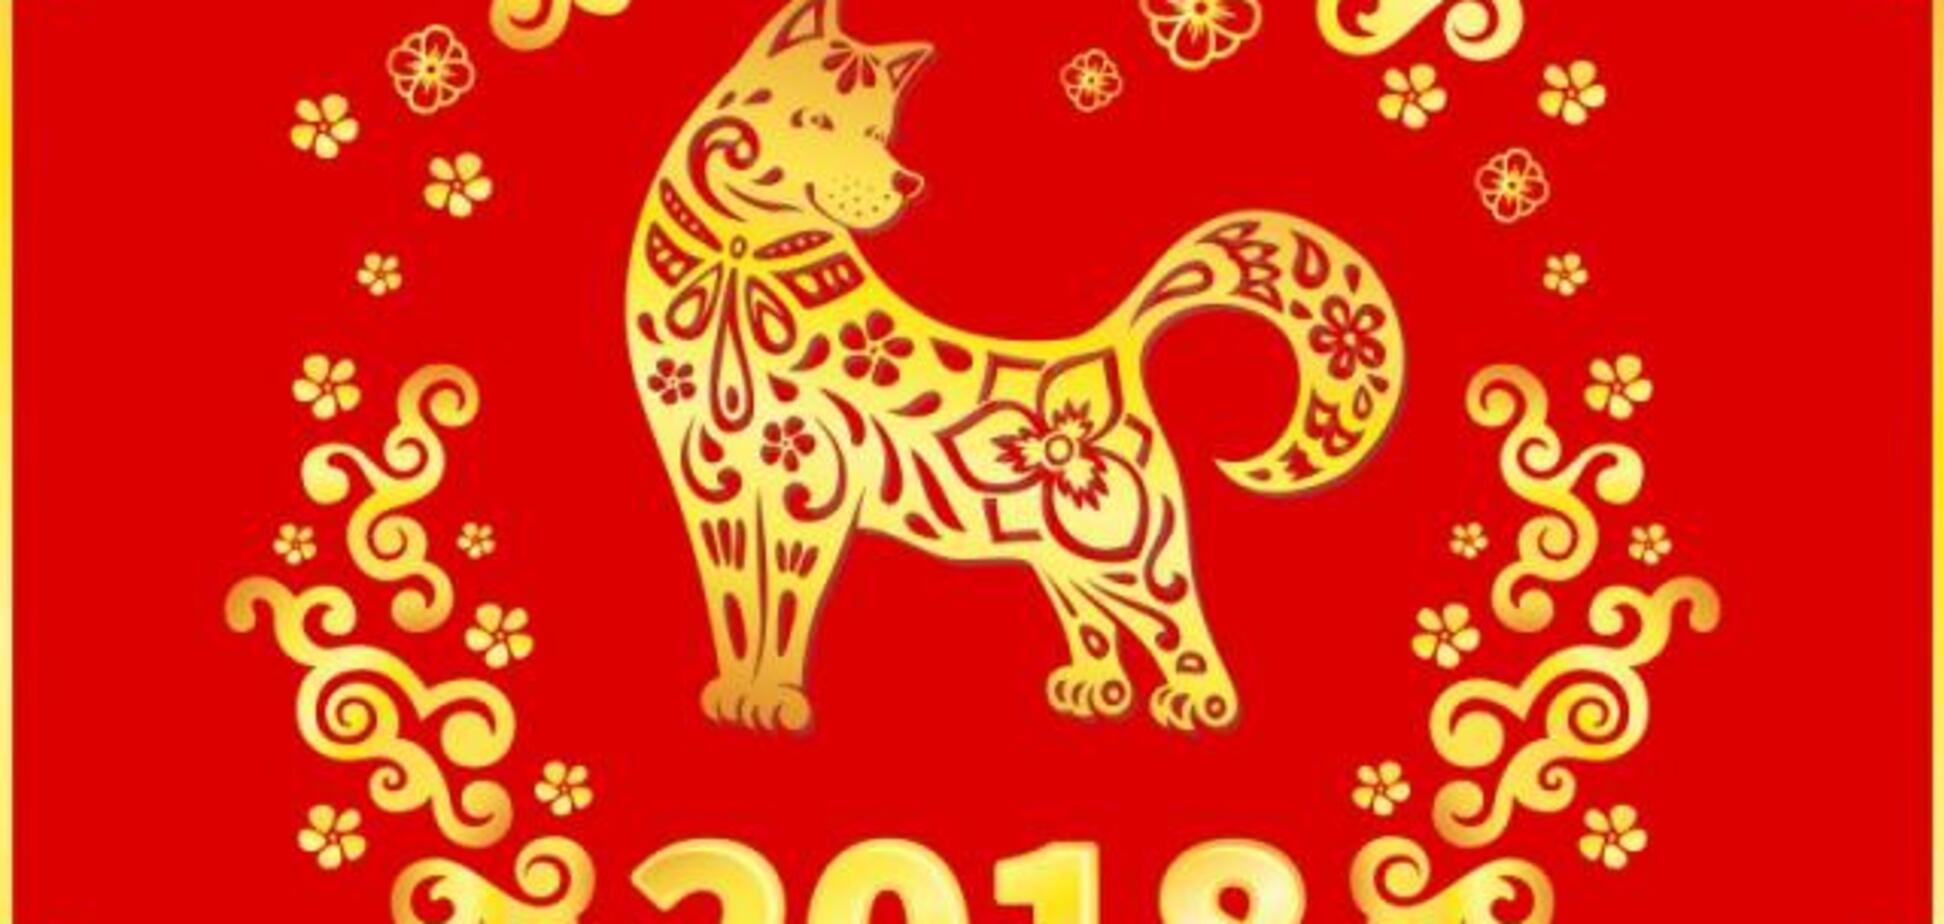 Китайський Новий рік: що не можна робити і як залучити удачу